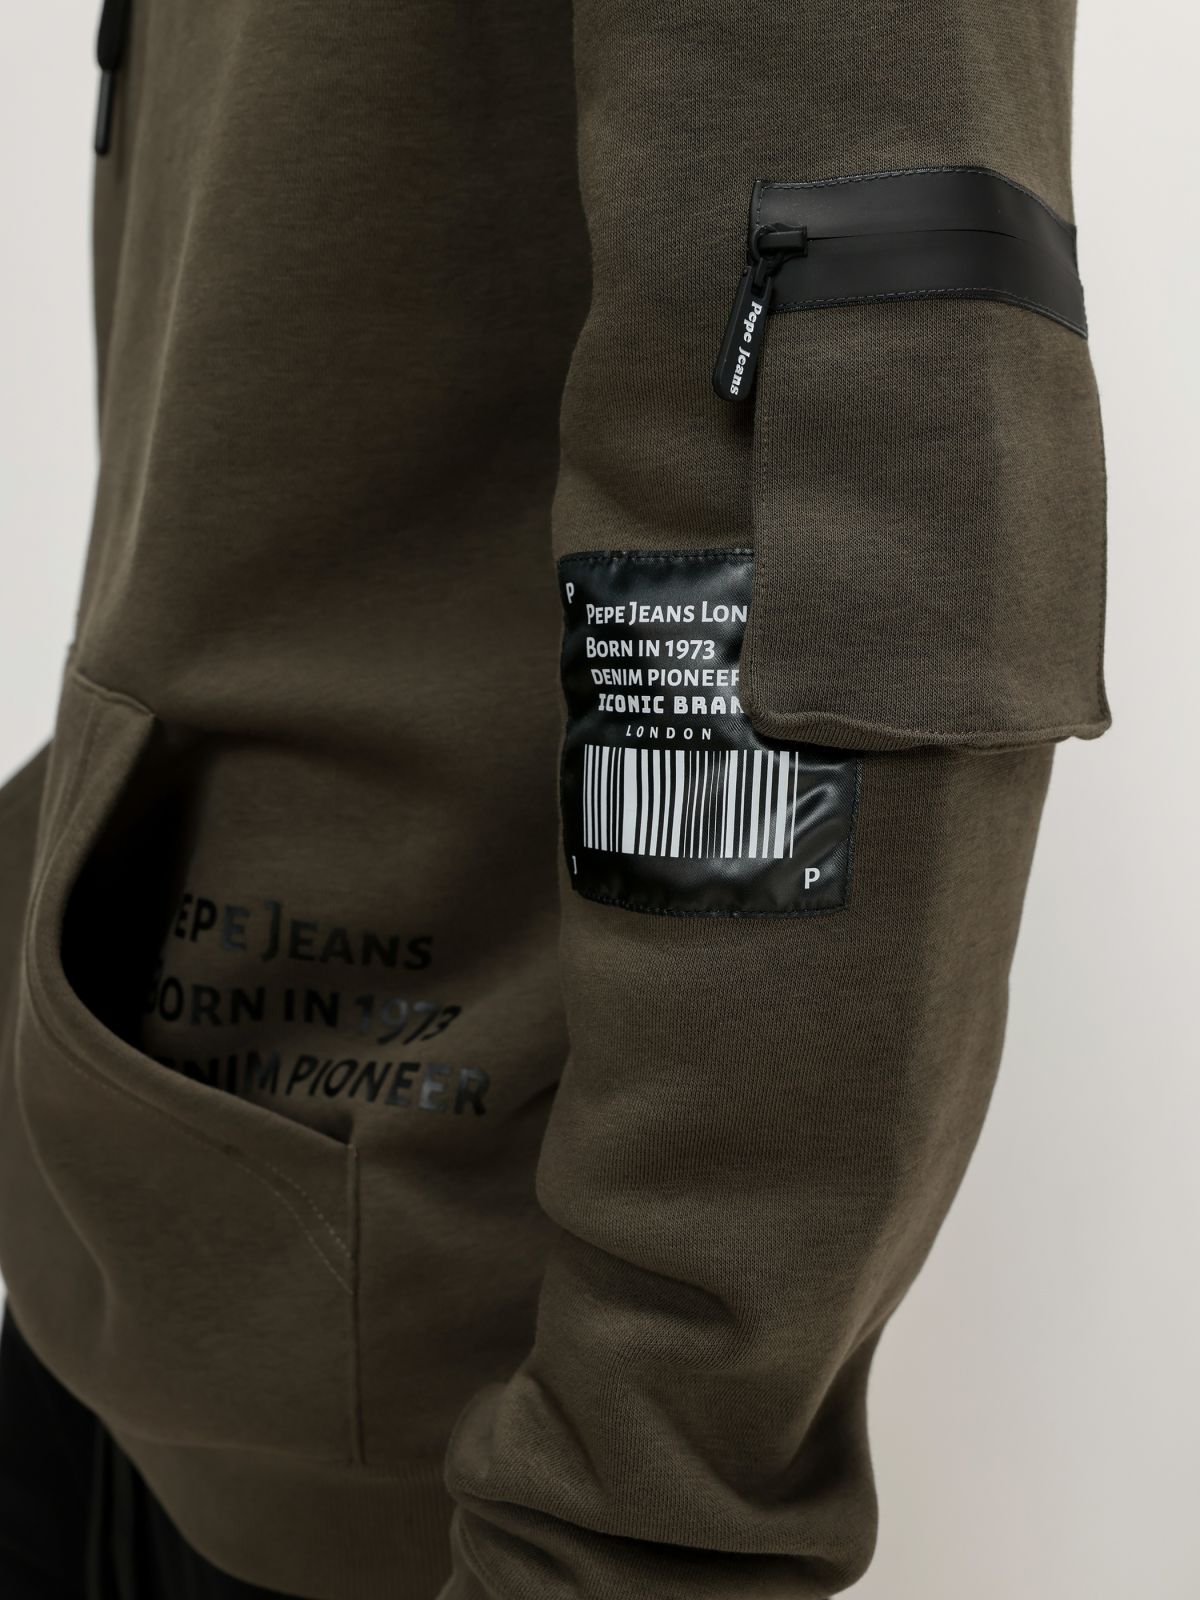  חליפת טרנינג עם פאץ' לוגו של PEPE JEANS